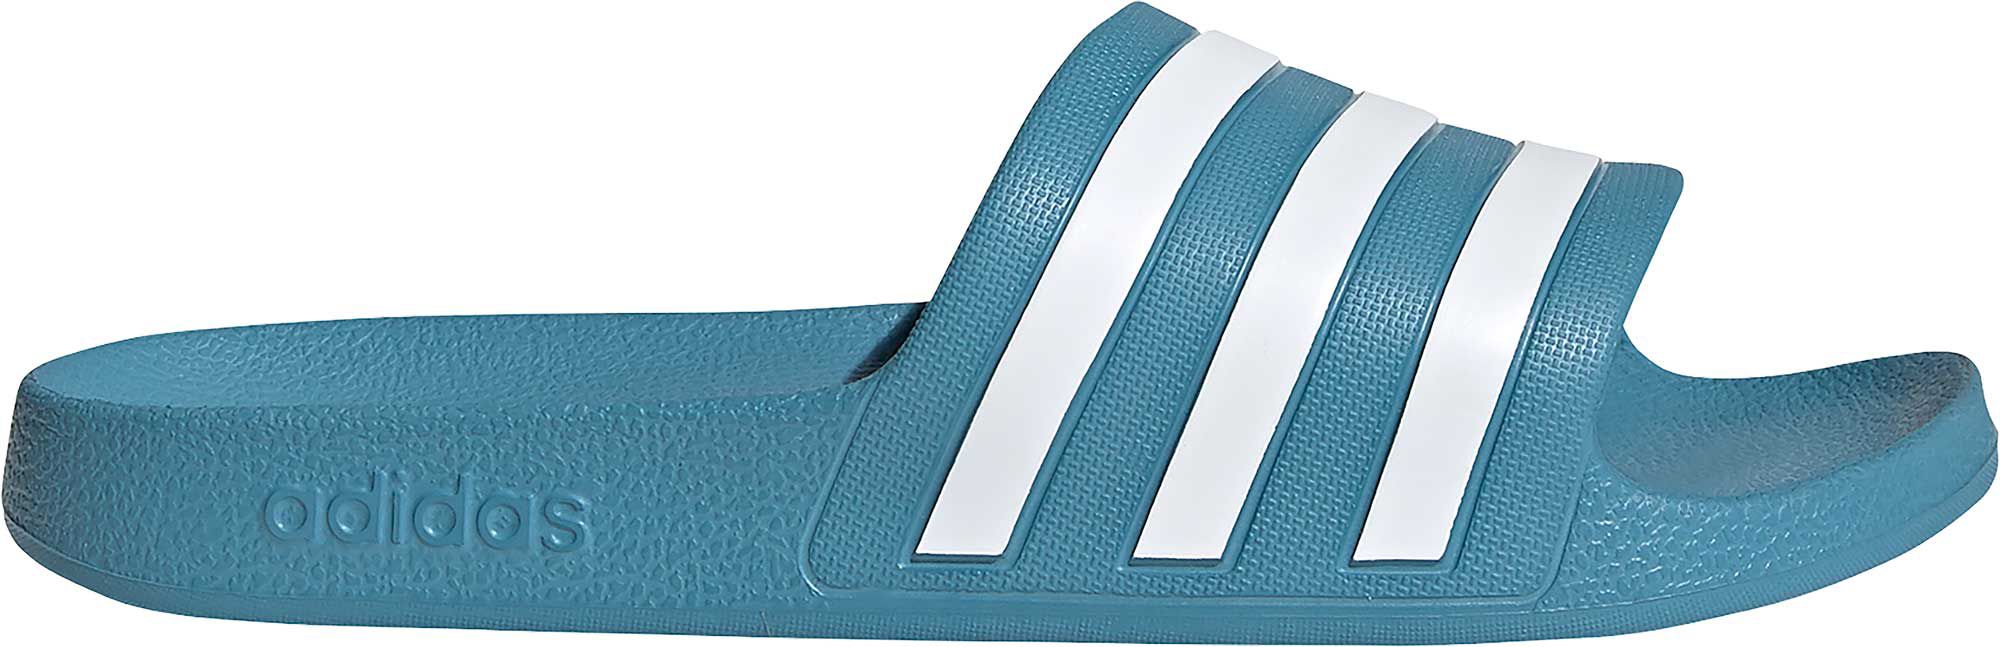 adidas adilette aqua slides blue